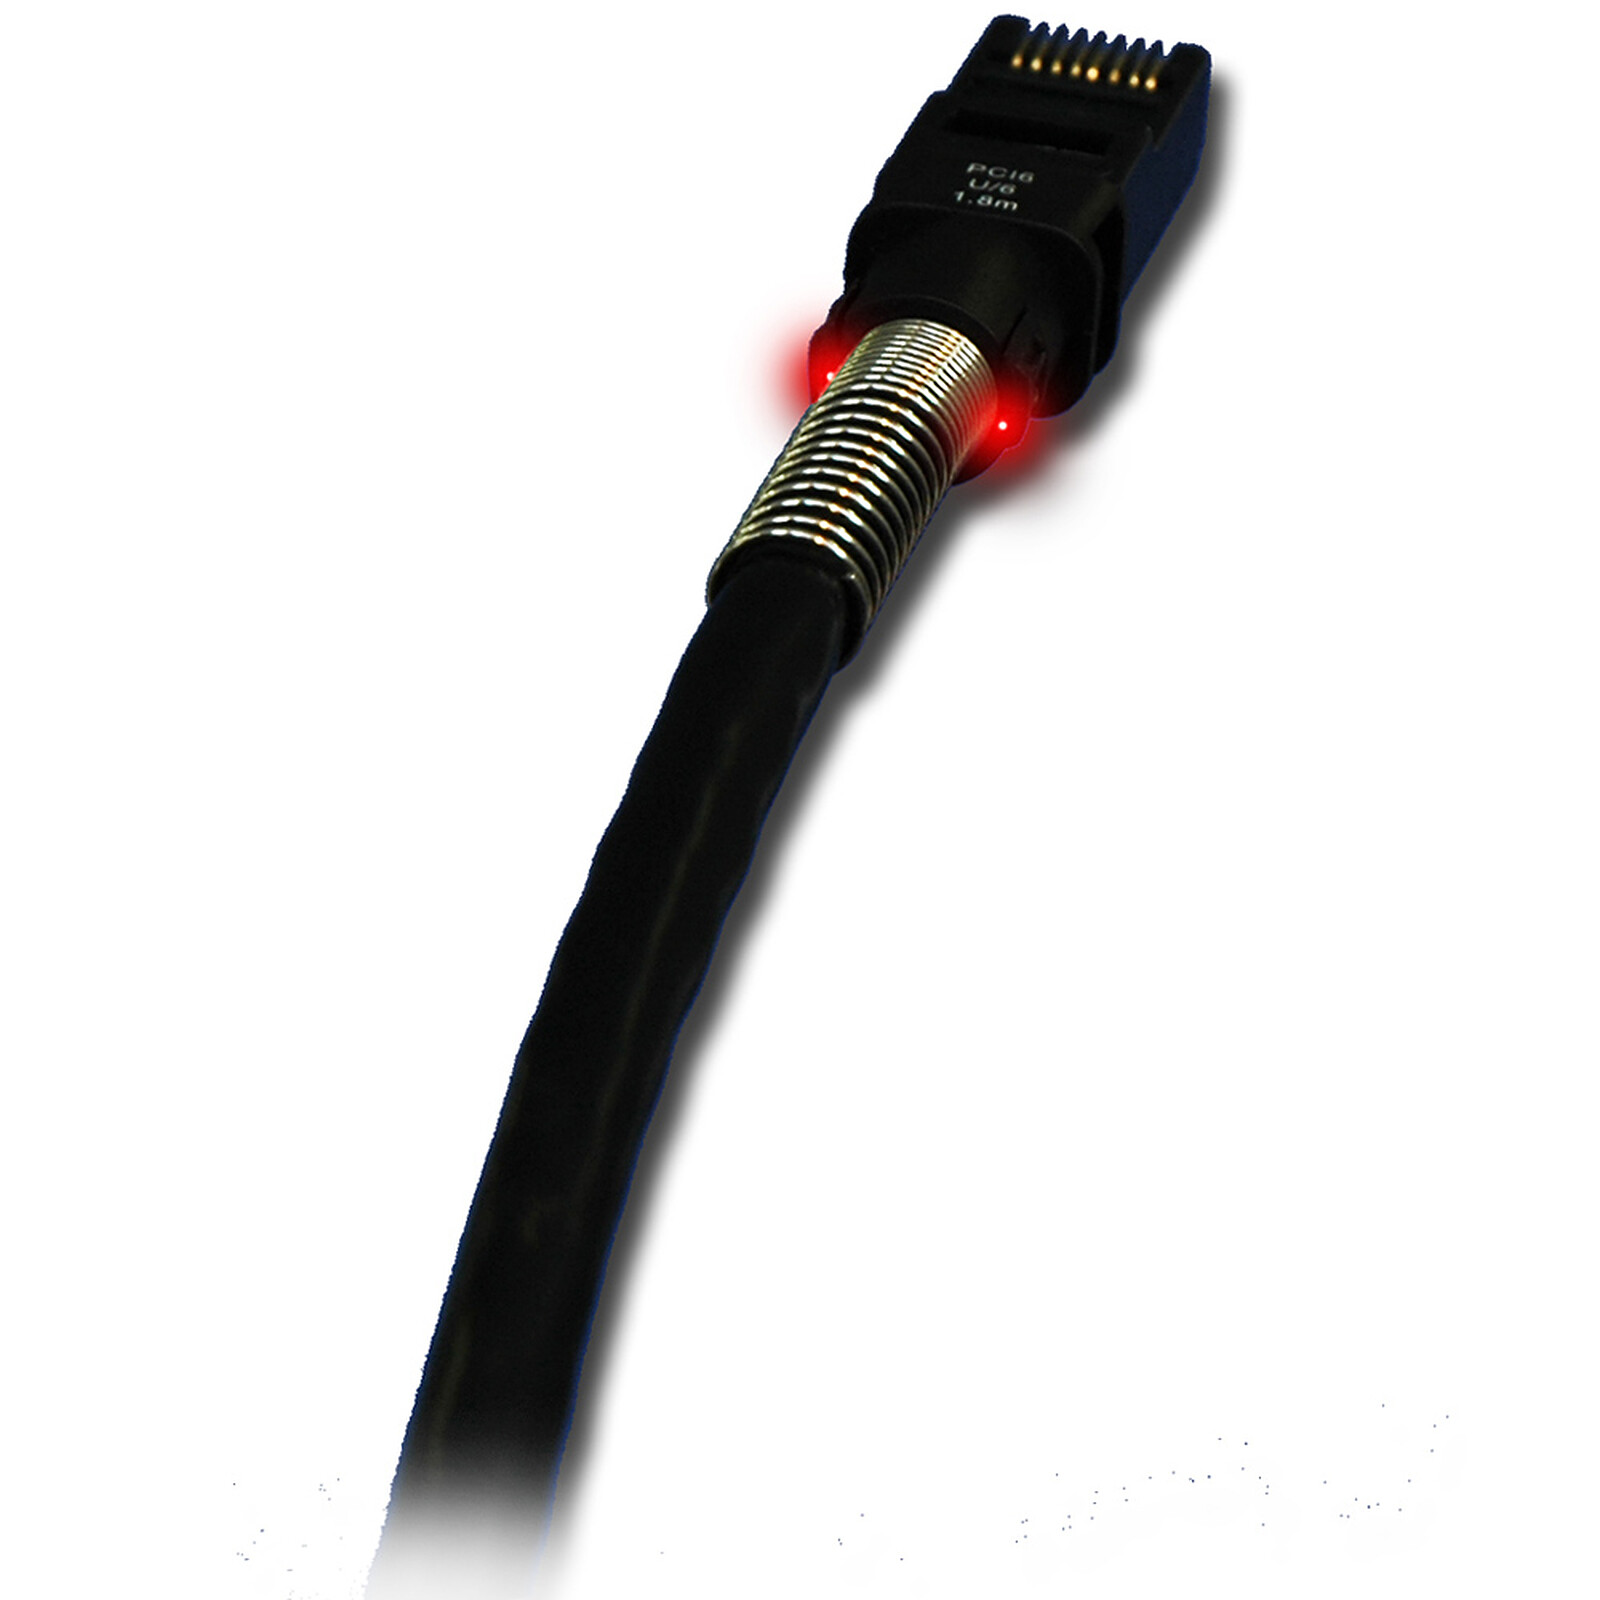 Basics Câble réseau Ethernet RJ45 catégorie 6 - 7,6 m, Noir